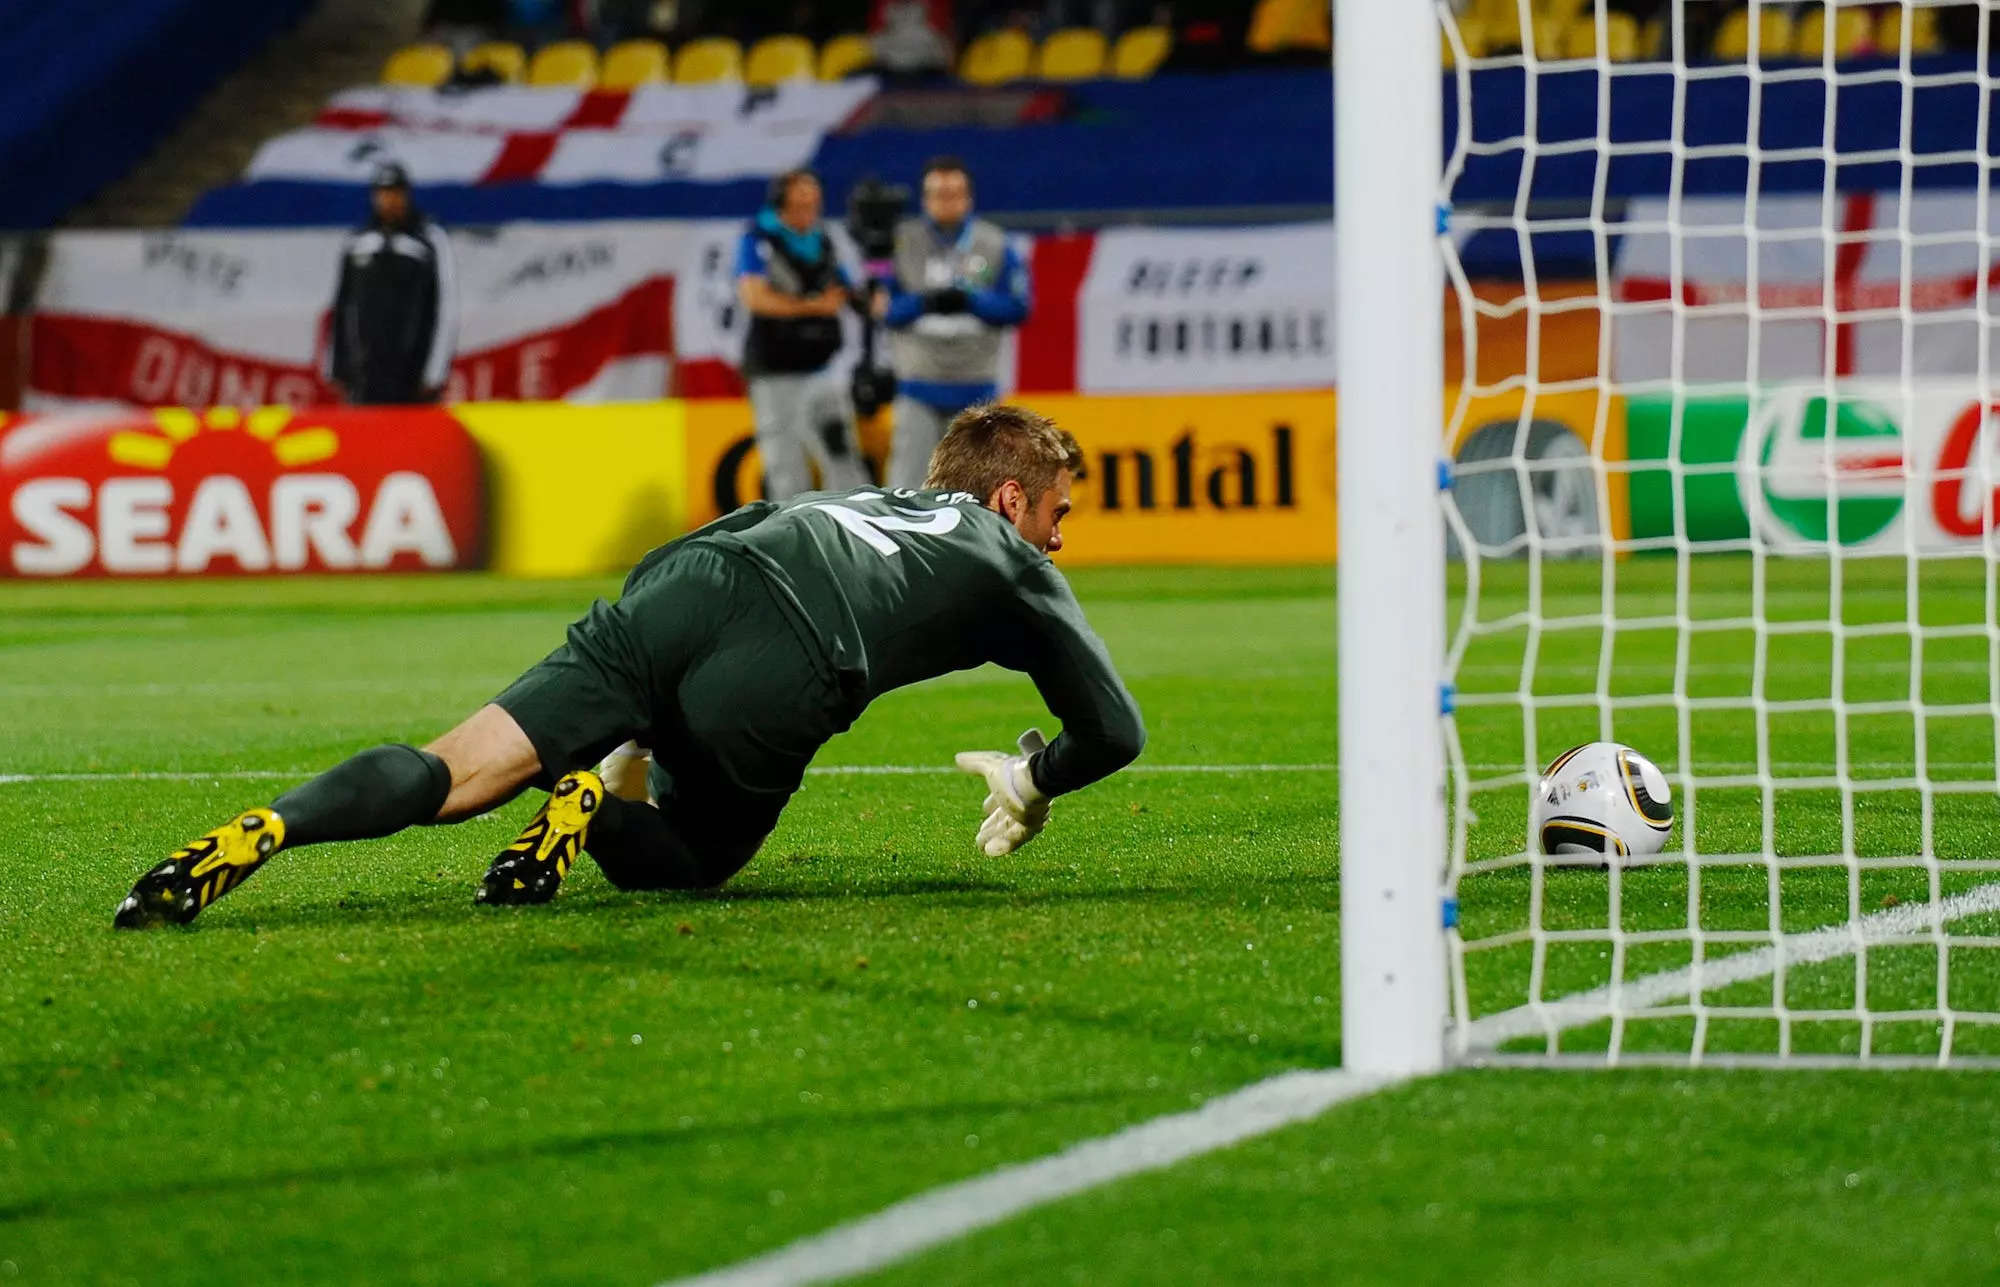 Les États-Unis n'auront pas peur d'affronter l'Angleterre lors de la Coupe du monde au Qatar, déclare la légende de l'équipe nationale DaMarcus Beasley